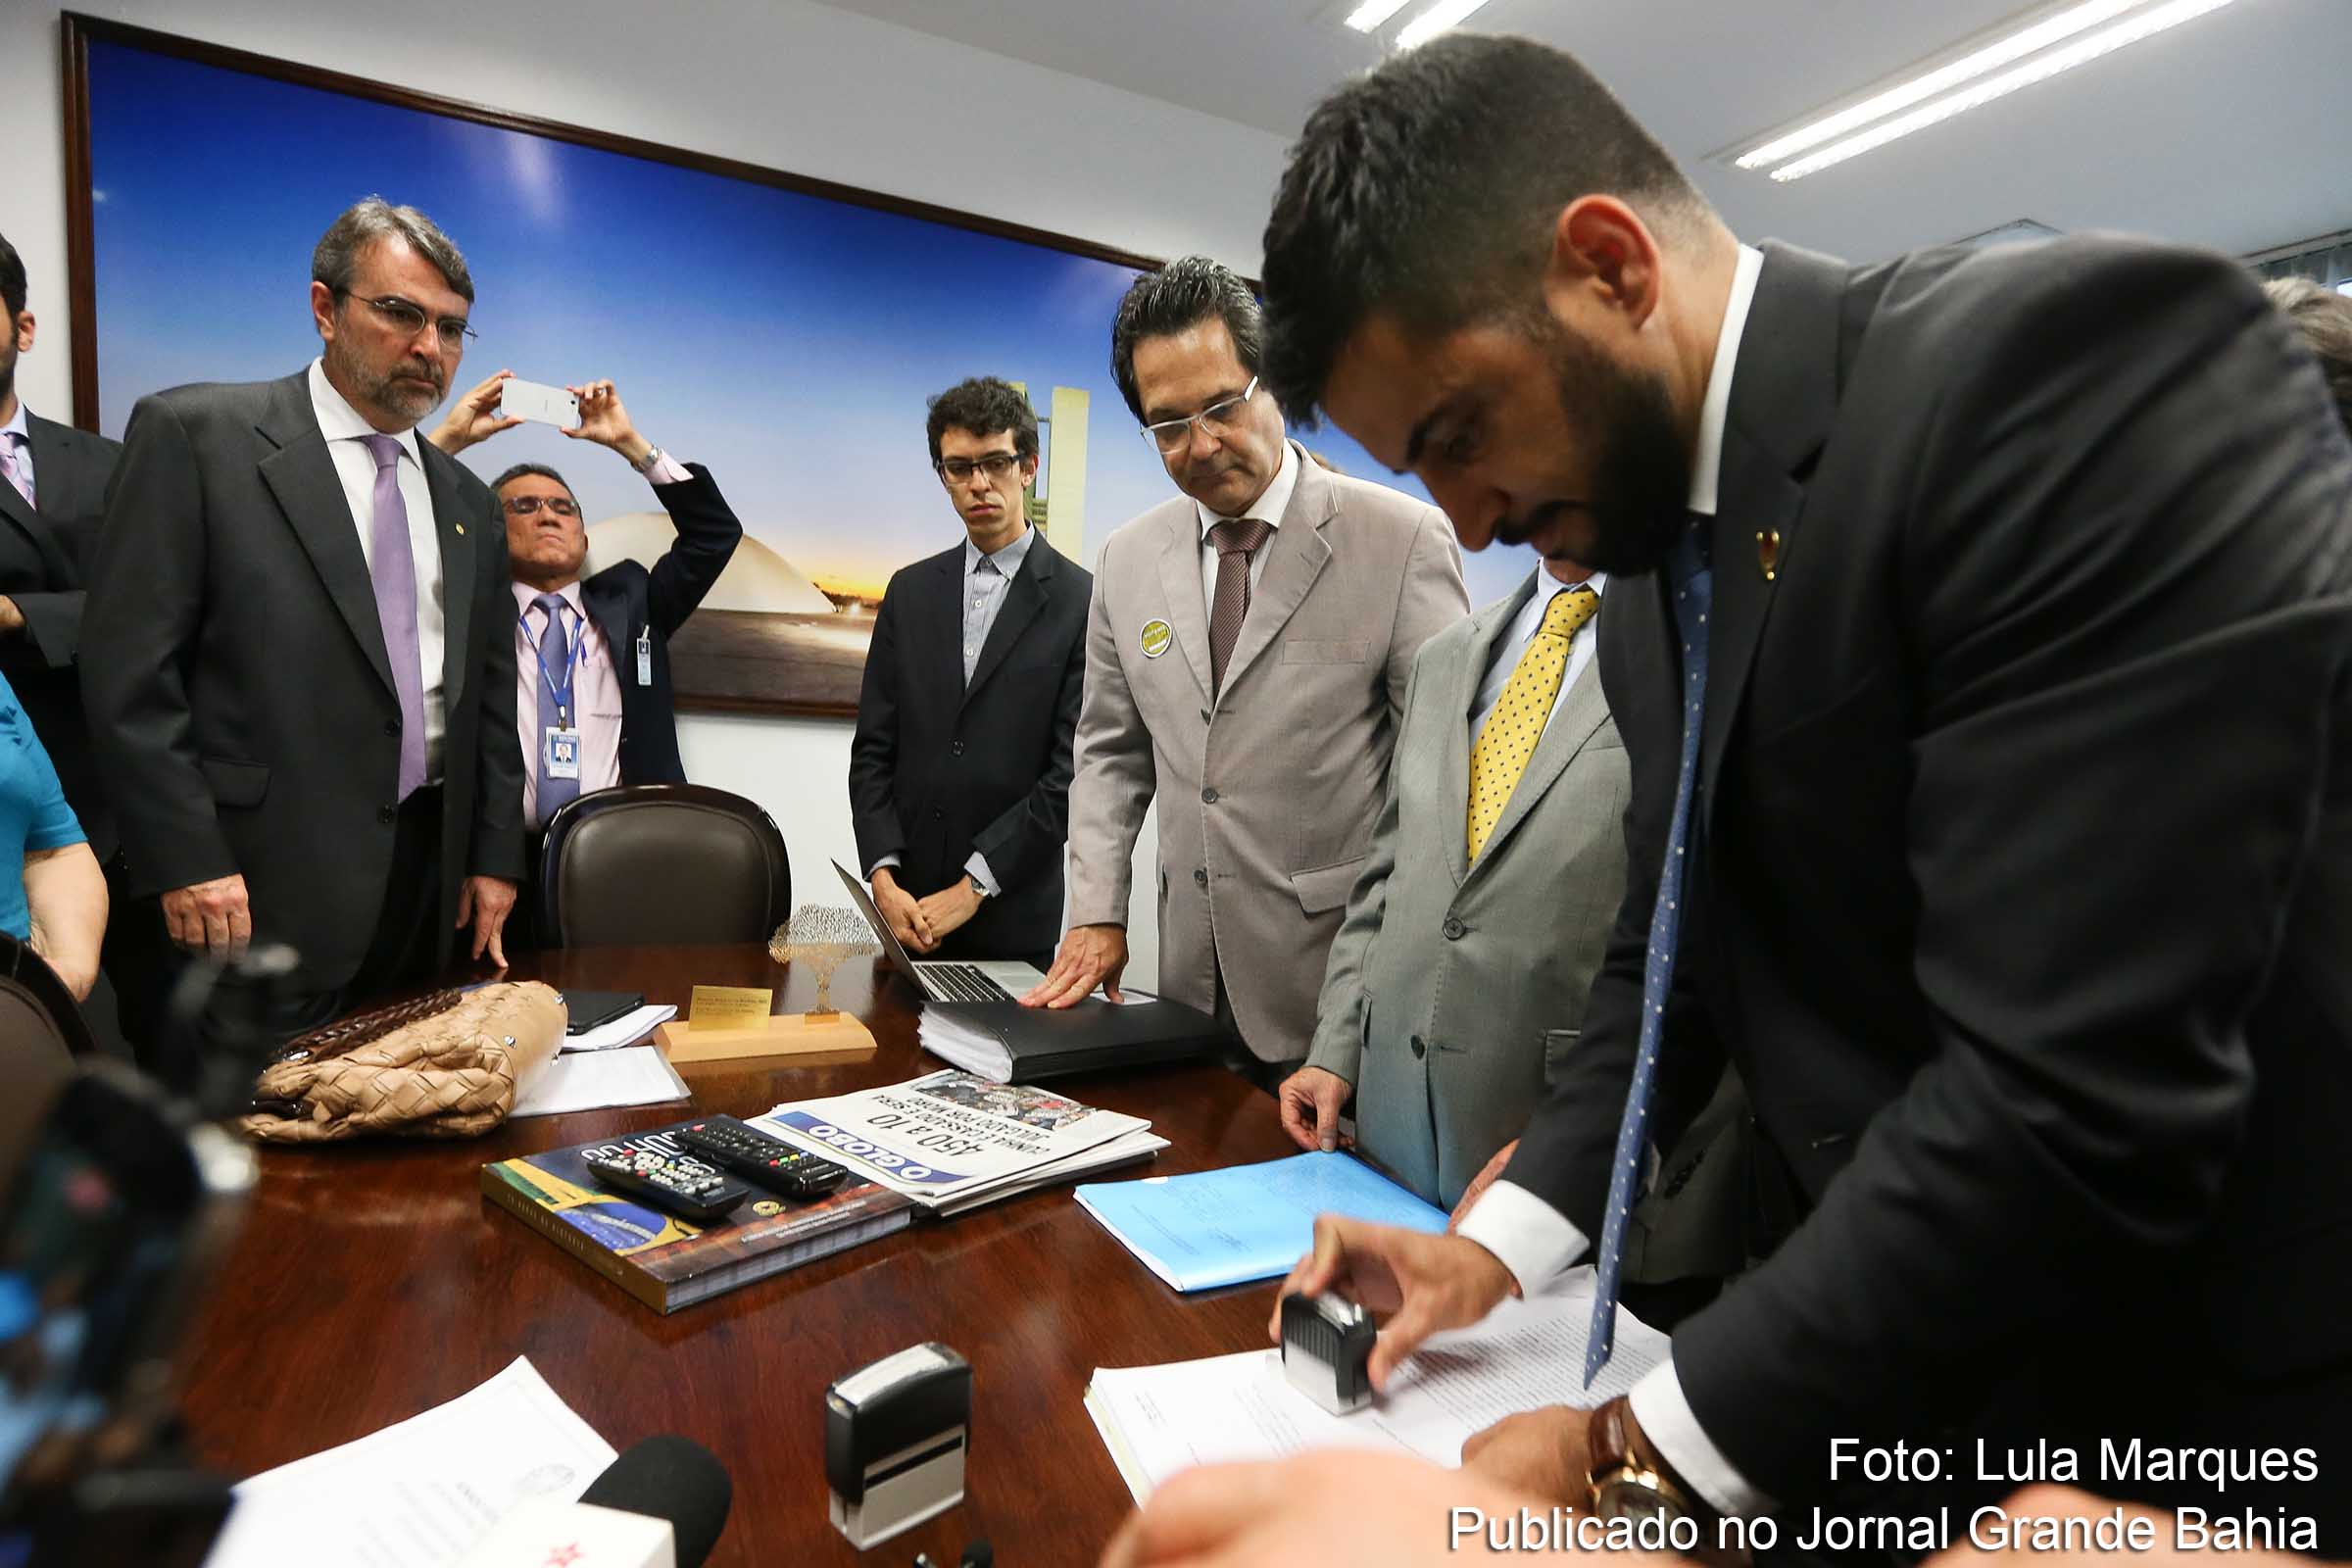 Juristas protocolaram no Senado Federal um pedido de impeachment contra o ministro Gilmar Mendes